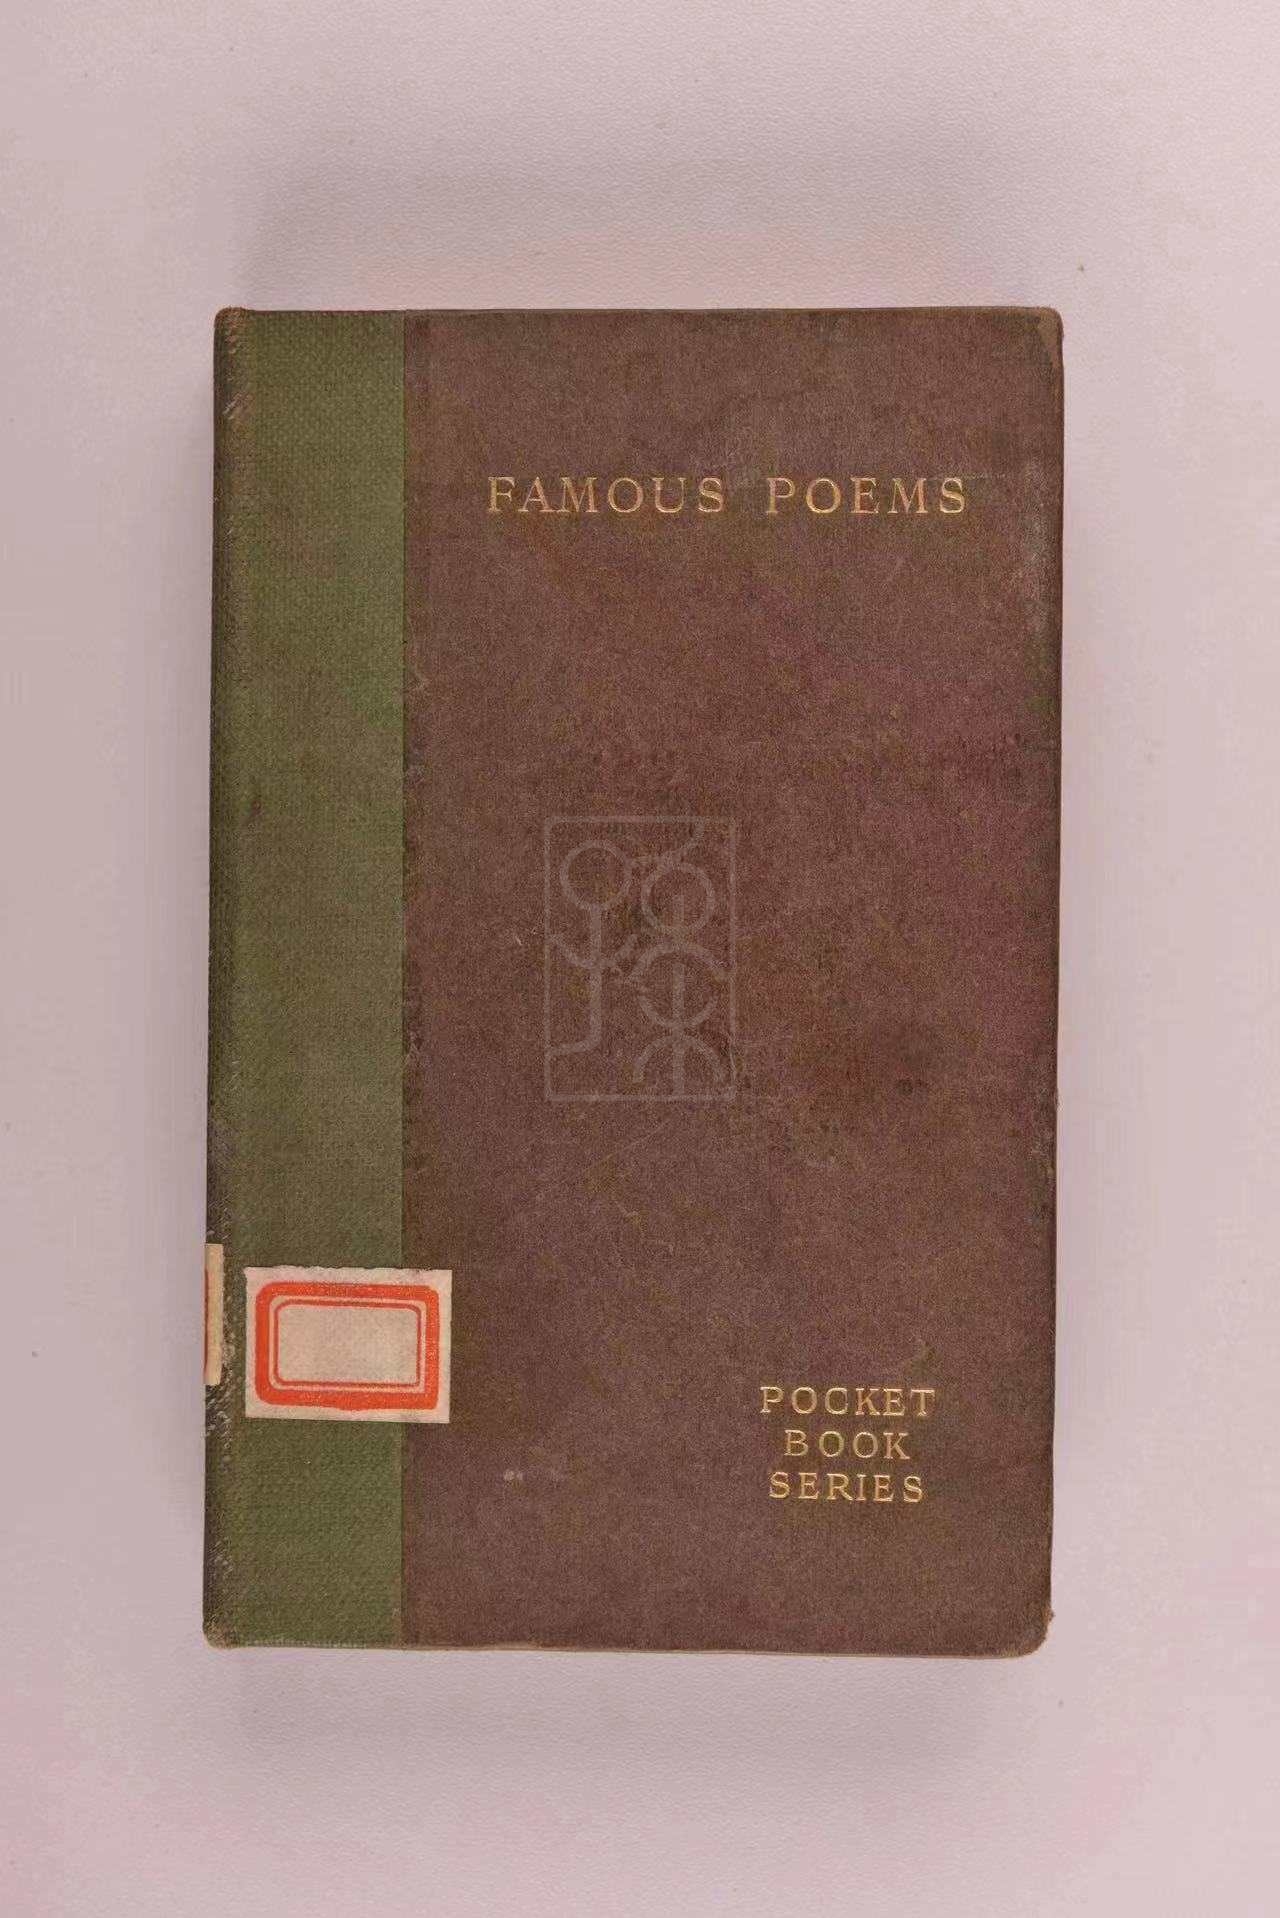 1909年版《名诗集》（Famous Poems）